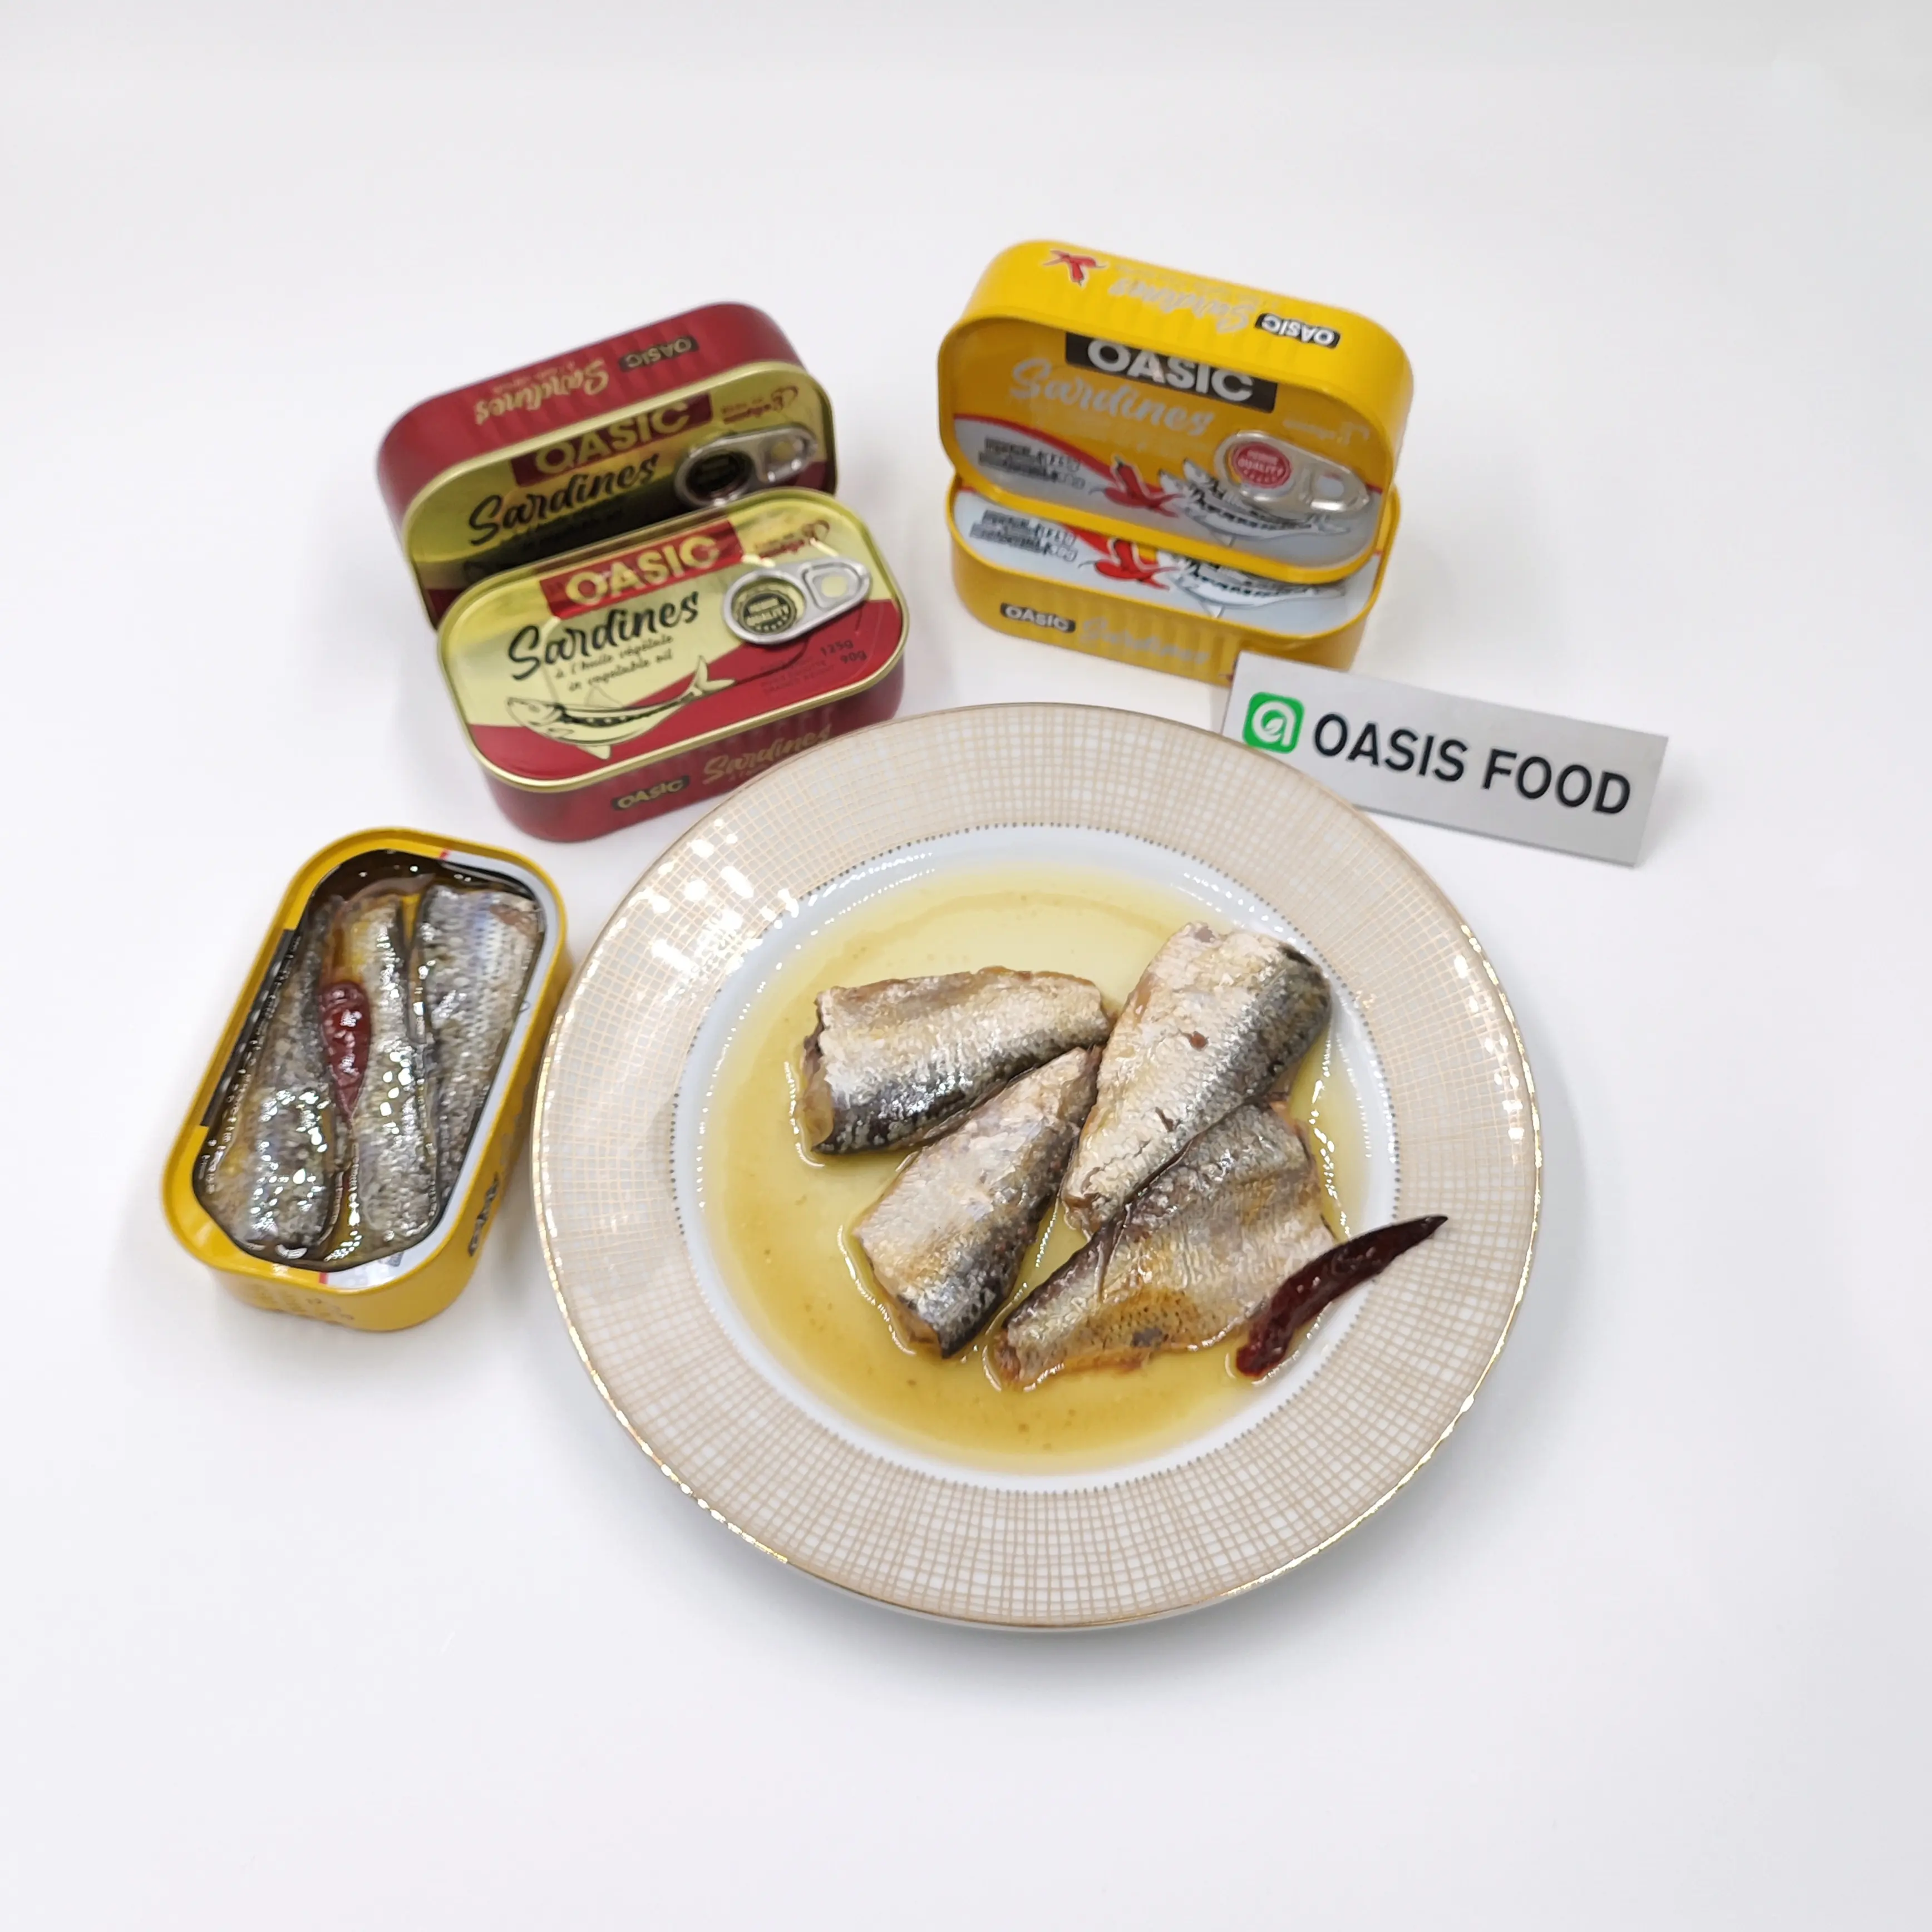 Марш, частная марка, фабрика, приготовила вкусные консервированные рыбные сардины в растительном масле и с Чили по более низкой цене